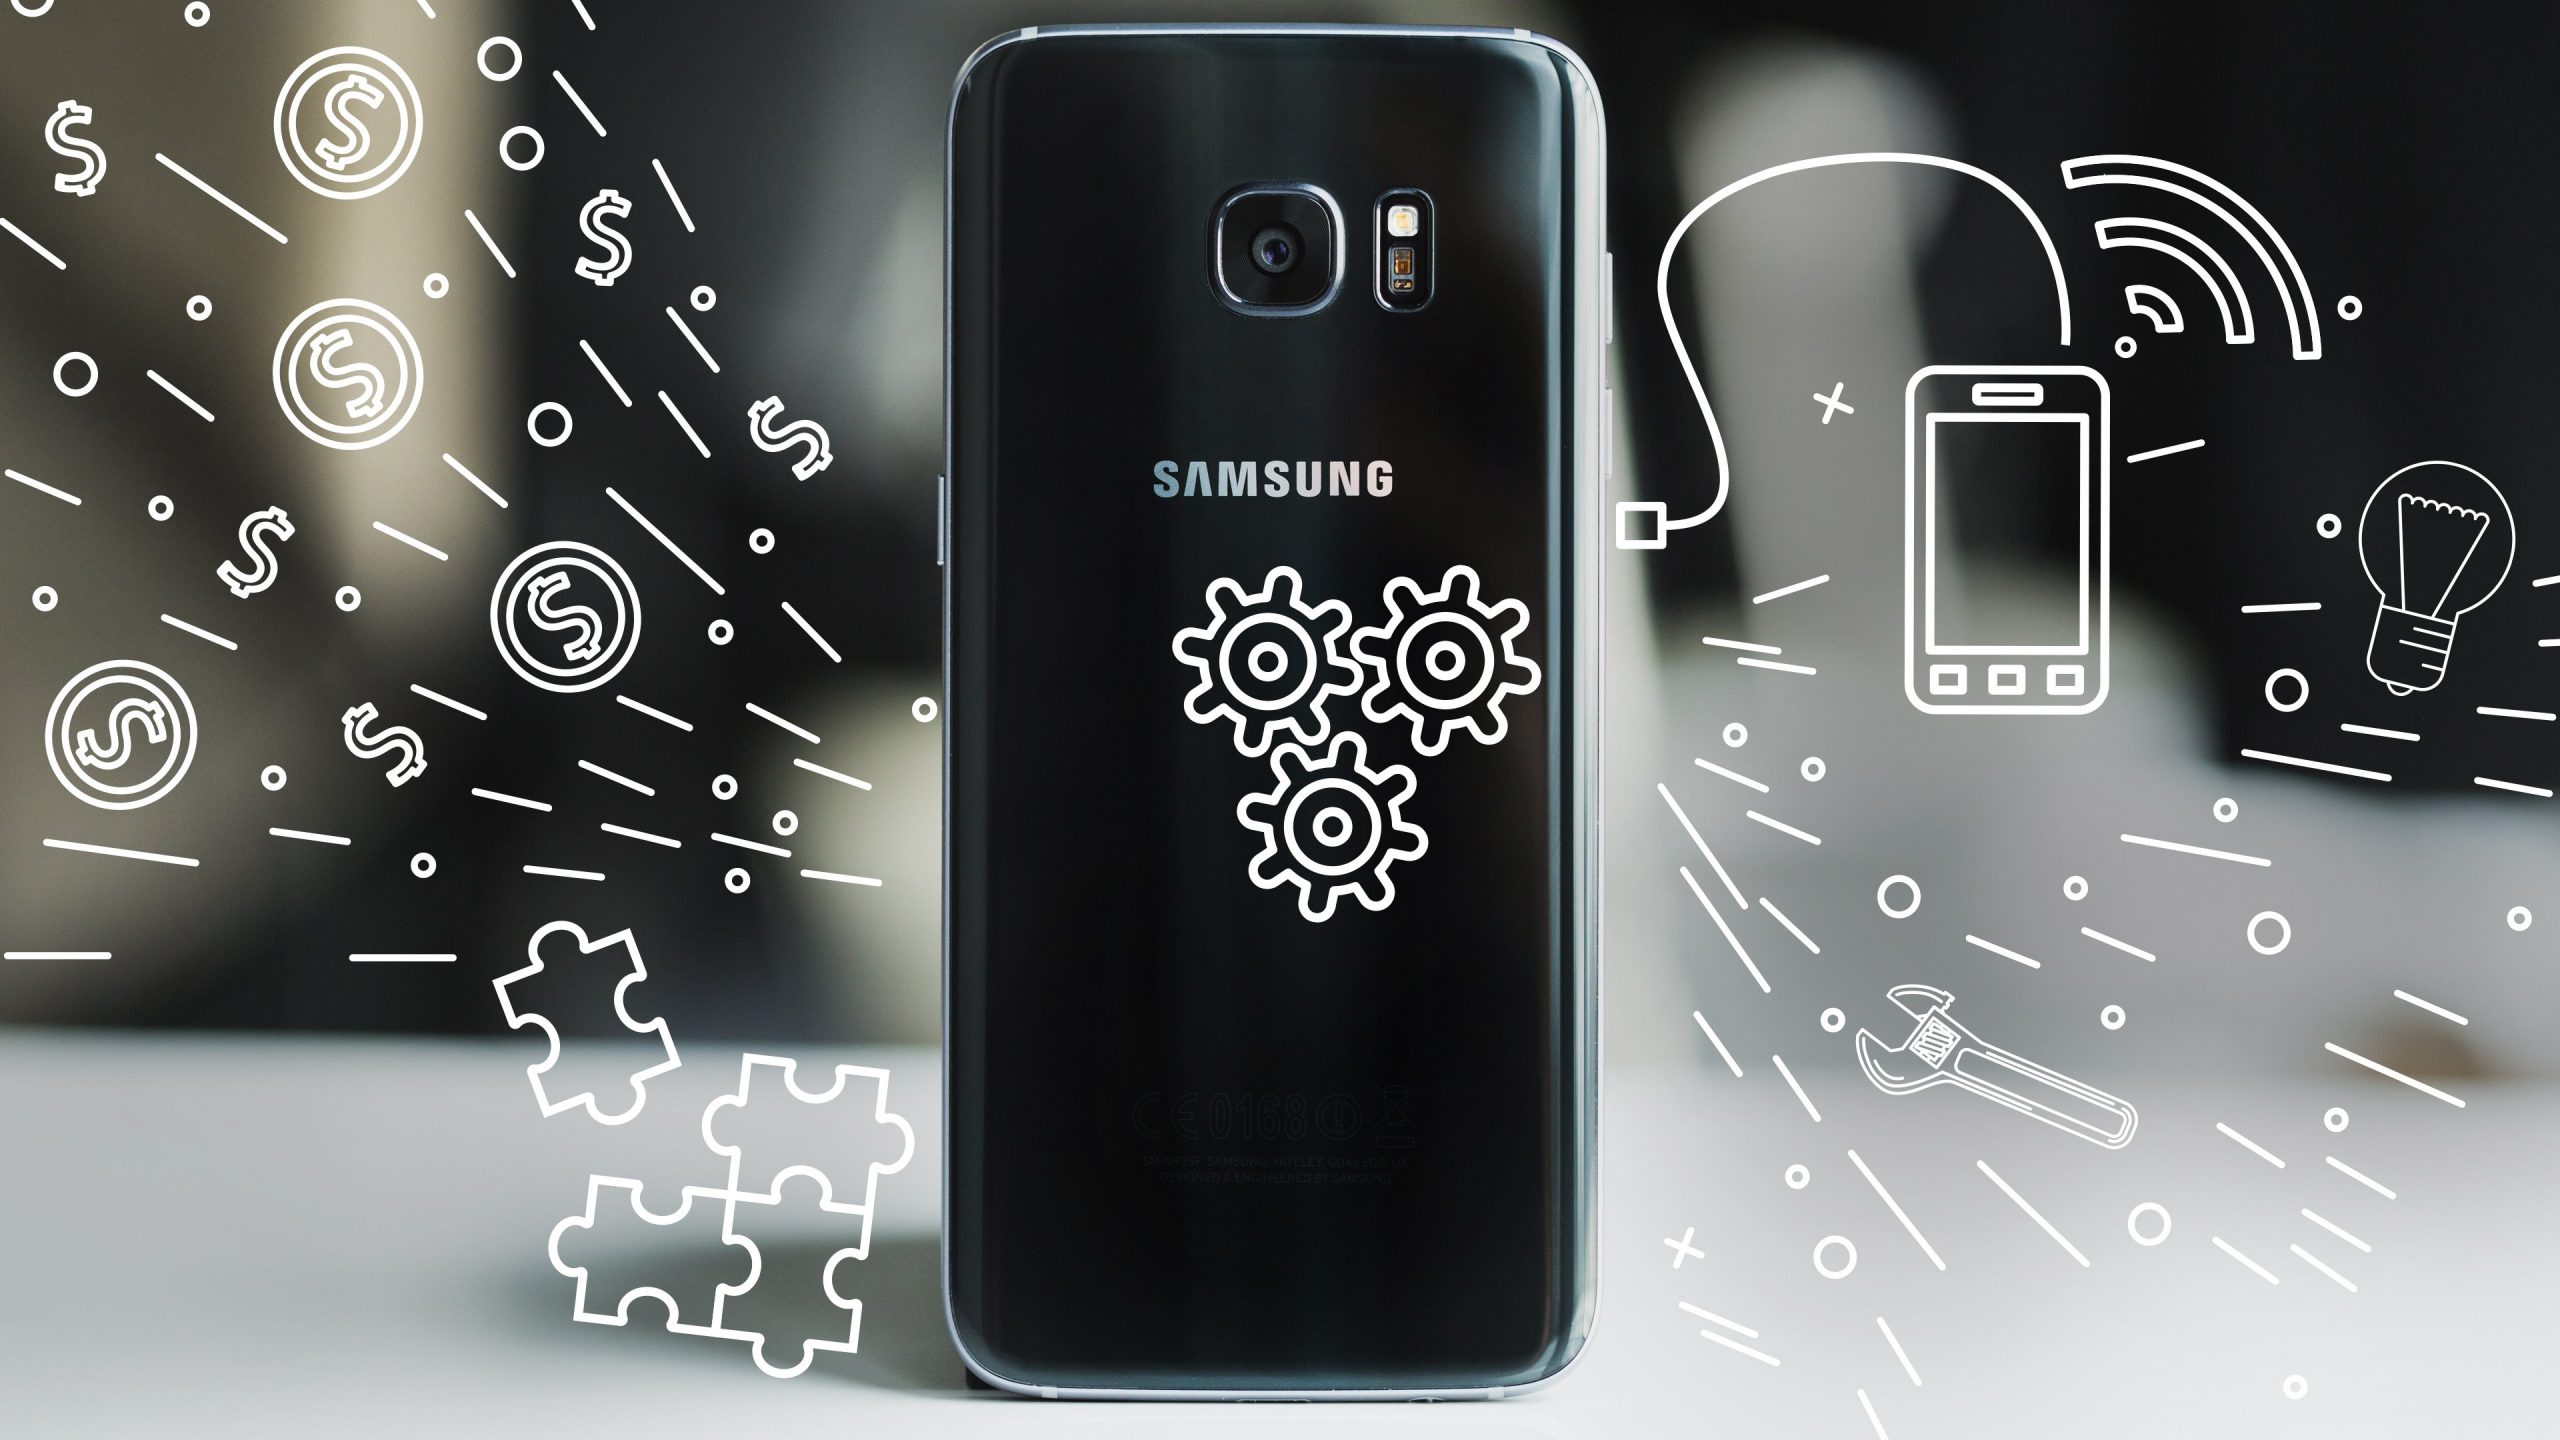 Samsung Galaxy S7 ja S7 Edge: 11 levinumat probleemi ja nende lahendused